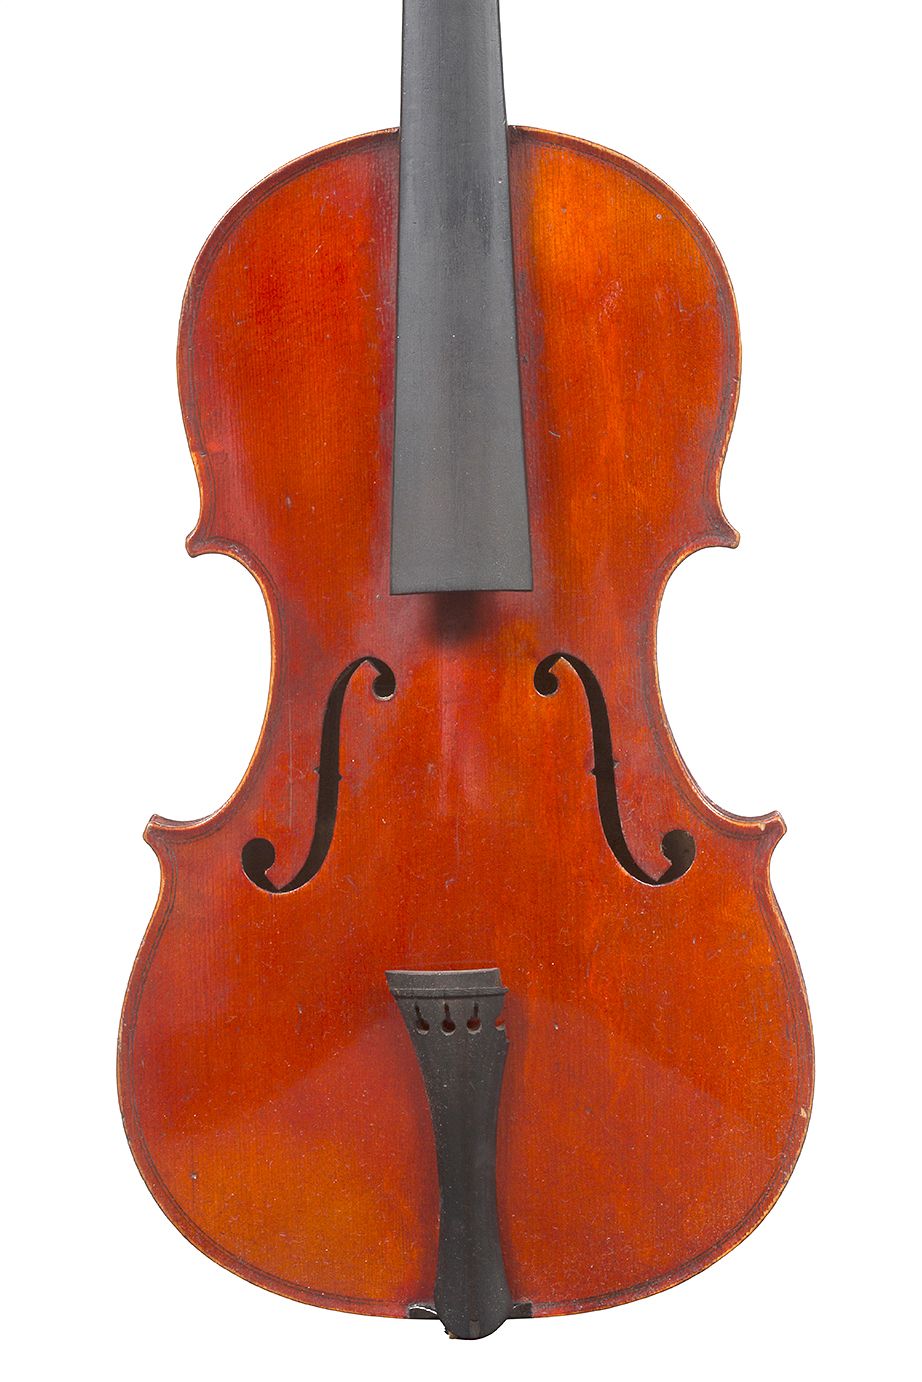 Null 学习小提琴尺寸3/4
工业化制造，无螺纹
标签为巴黎的保罗-鲍舍尔
状况良好 
背面有331毫米